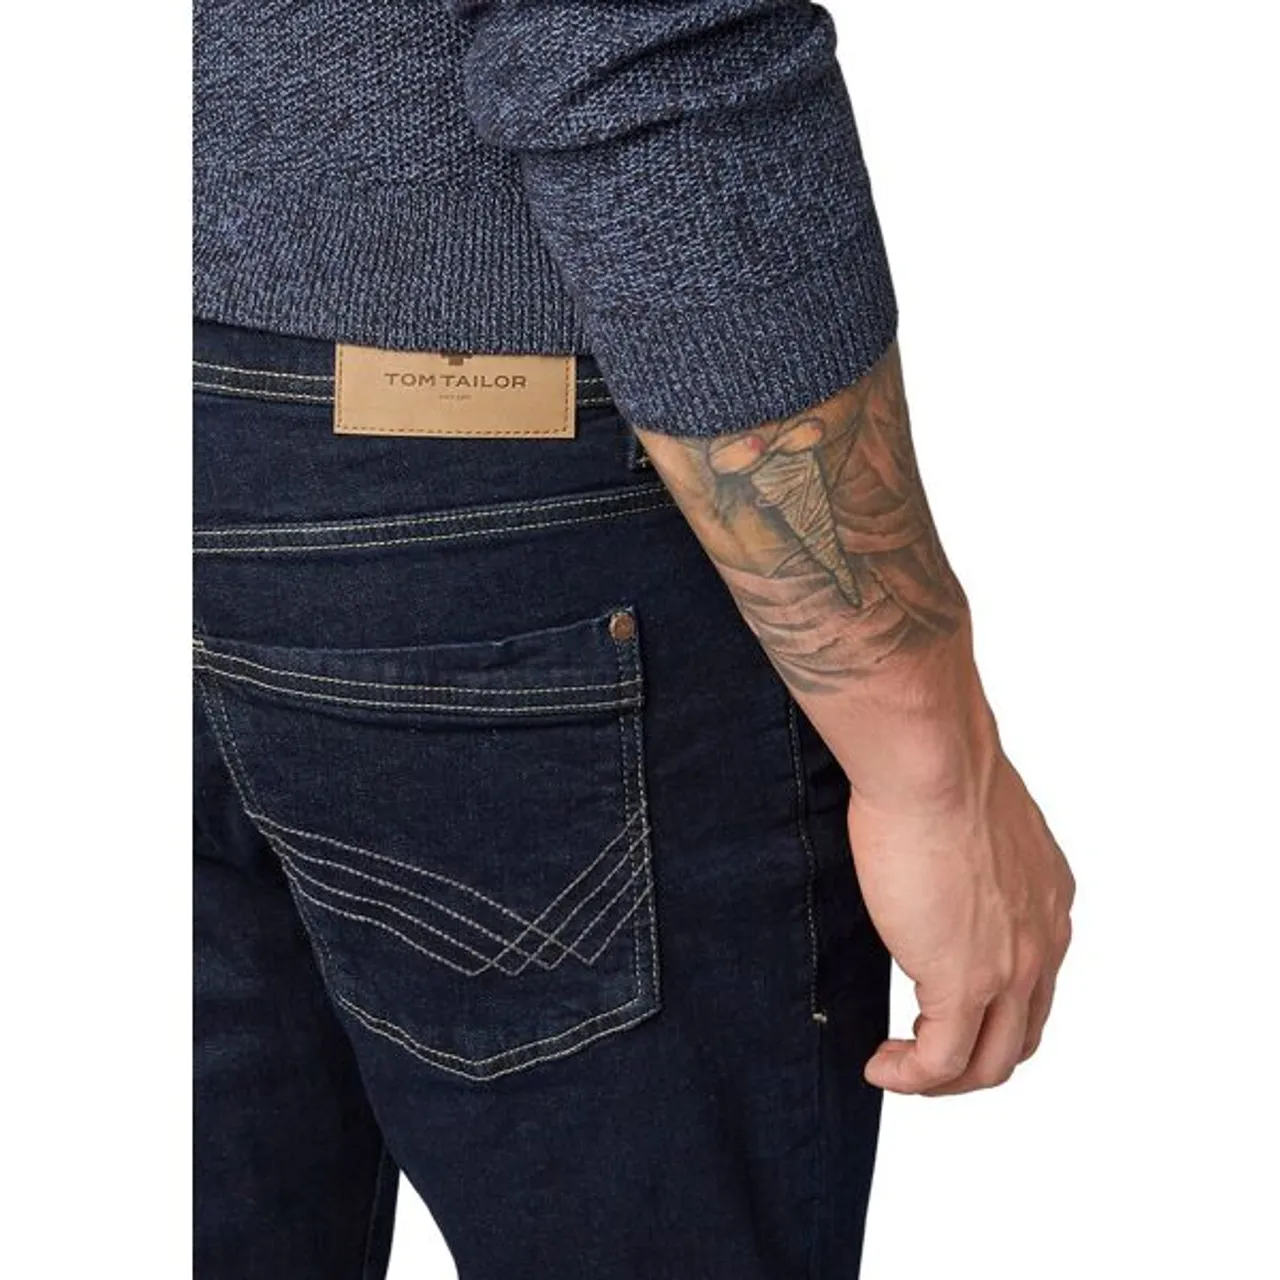 5-Pocket-Jeans TOM TAILOR "Josh" Gr. 32, Länge 32, blau (clean rinsed blue) Herren Jeans 5-Pocket-Jeans